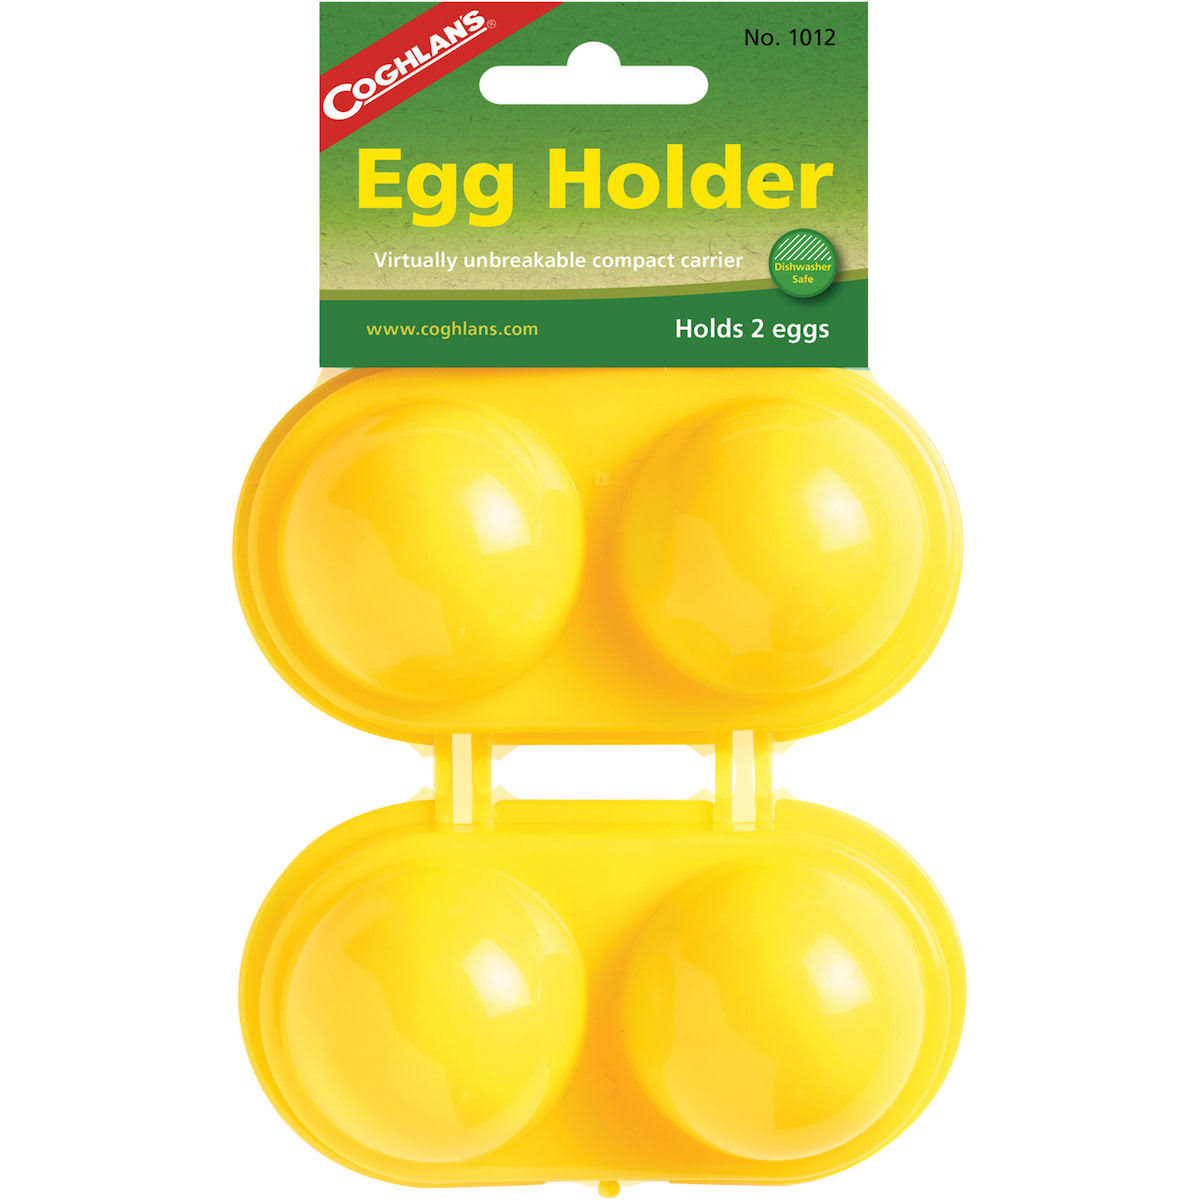 Coghlan's Egg Holder - 2 Eggs